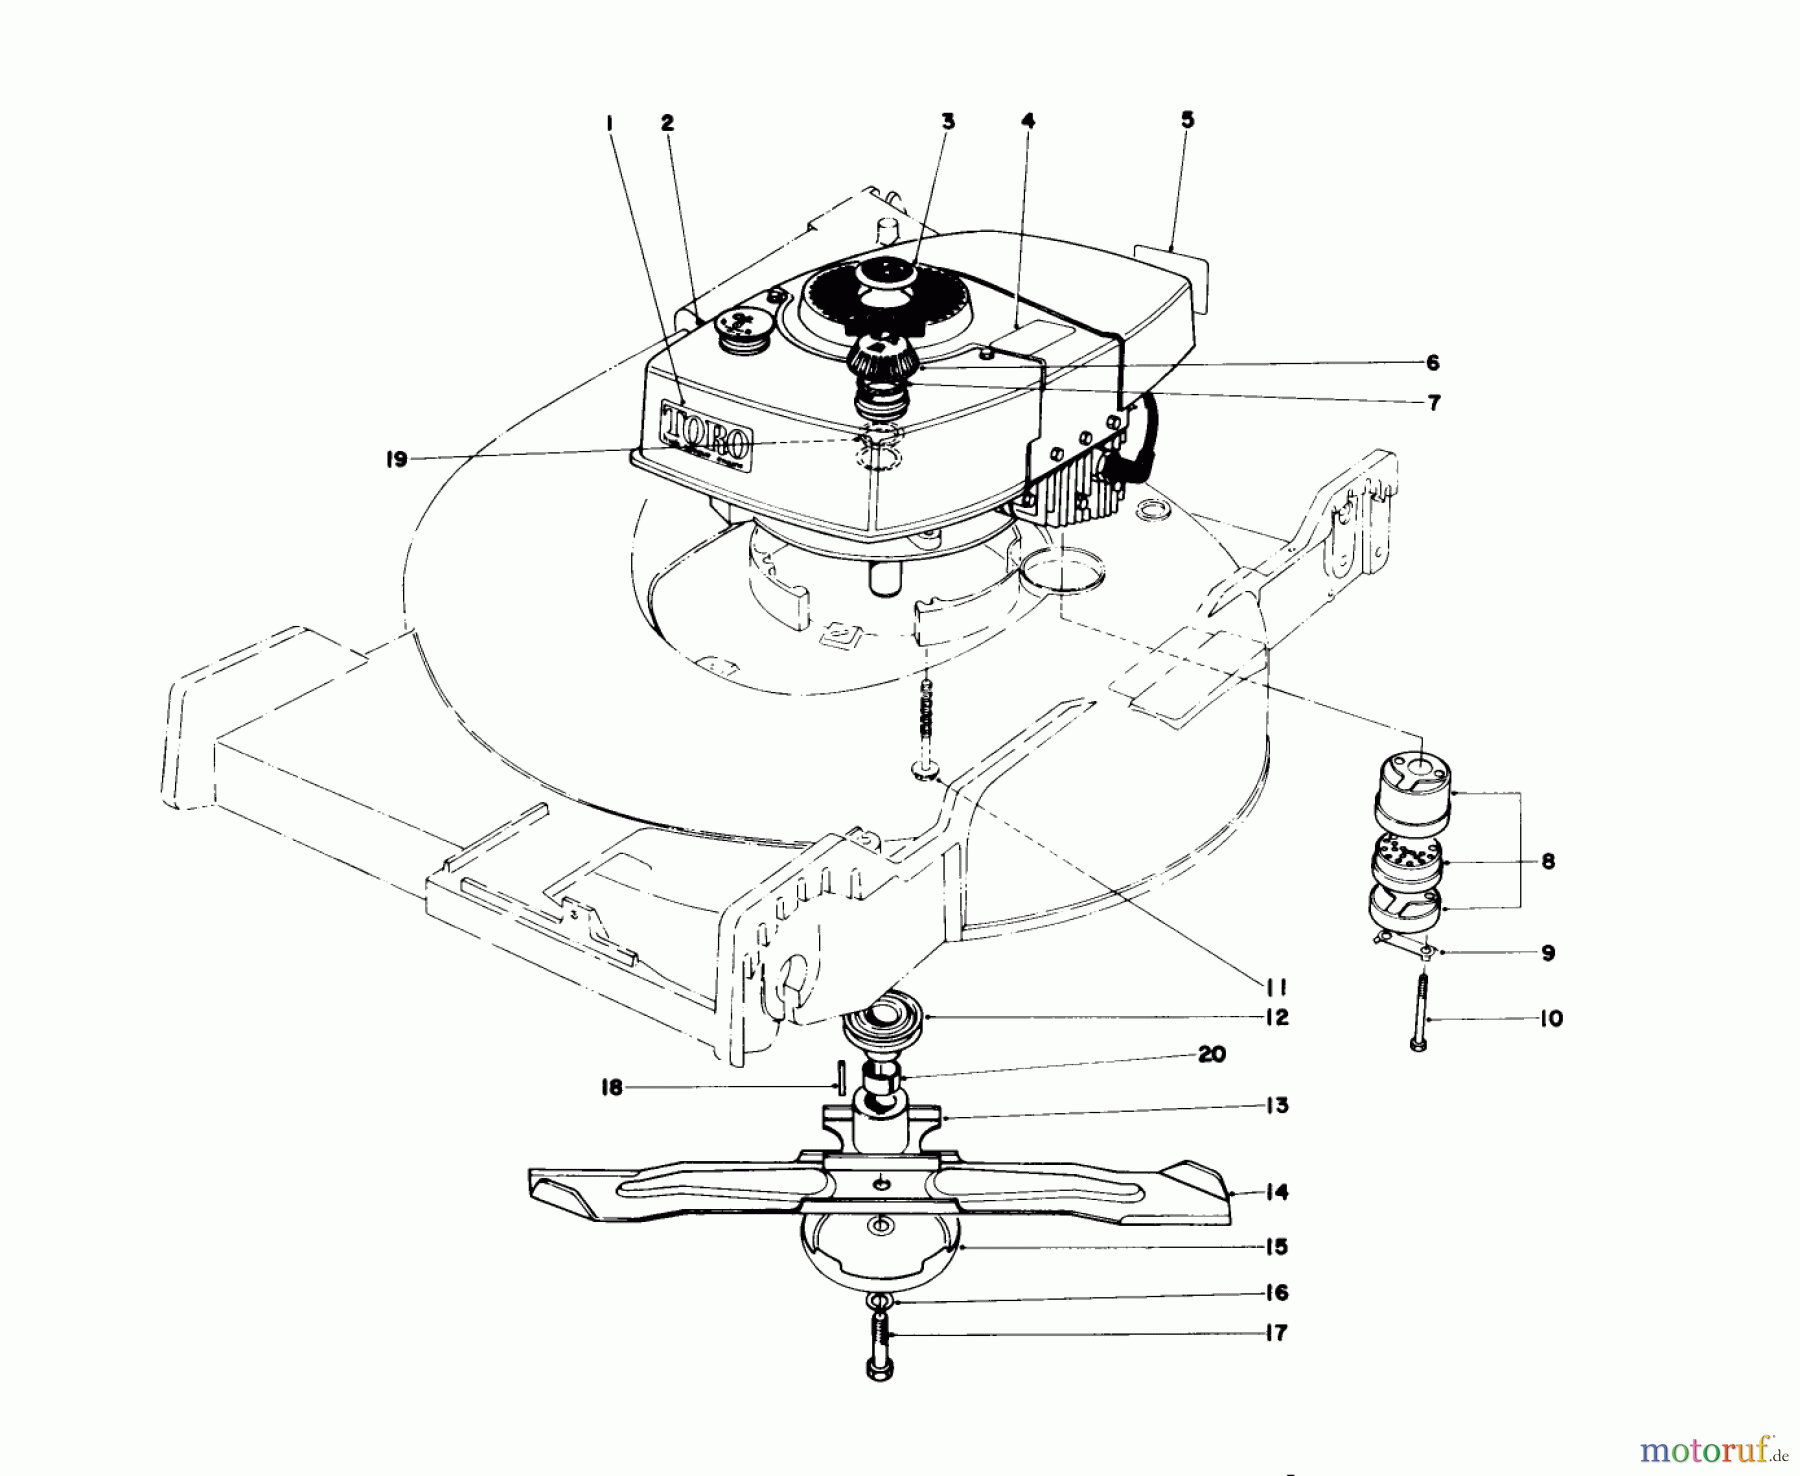  Toro Neu Mowers, Walk-Behind Seite 1 20517 - Toro Lawnmower, 1977 (7000001-7999999) ENGINE ASSEMBLY (MODEL NO. 20517)